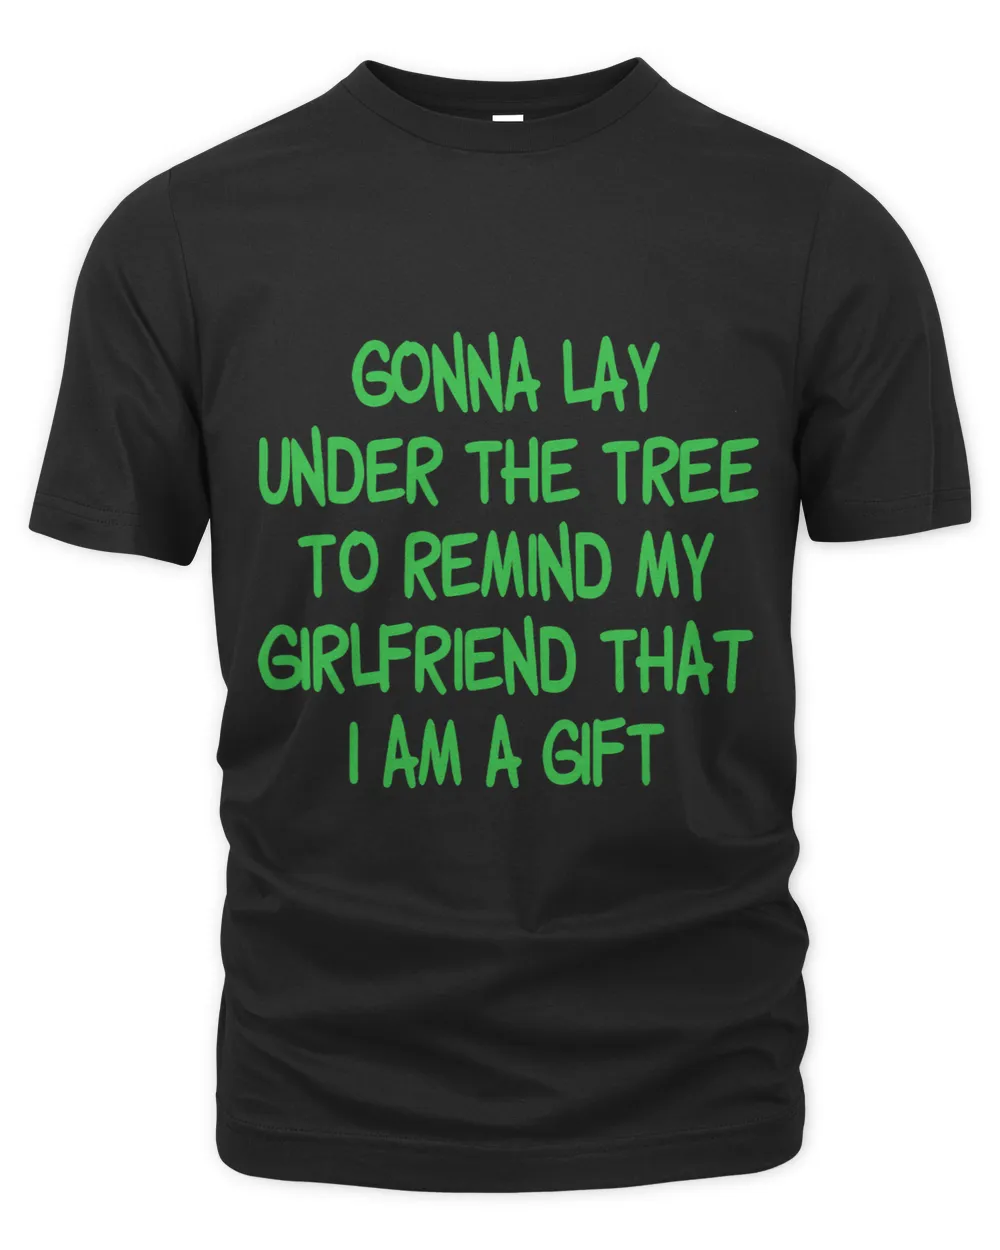 Gonna lay under the tree cuz i am a gift funny family xmas